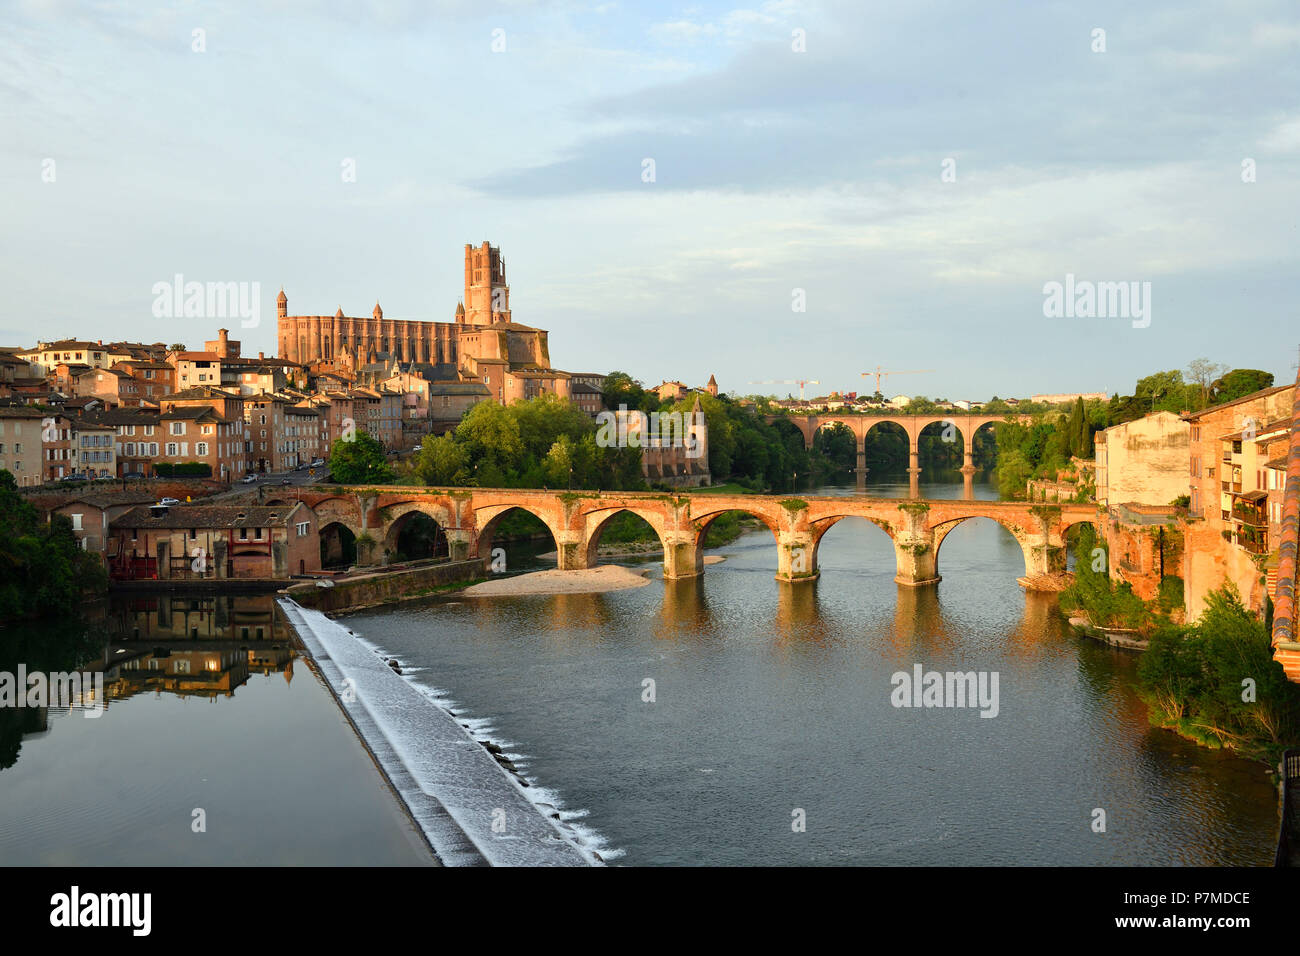 Francia, Tarn, Albi, la città episcopale, classificato come patrimonio mondiale dall UNESCO, il vecchio ponte del XI secolo e la Ste Cecile cattedrale Foto Stock